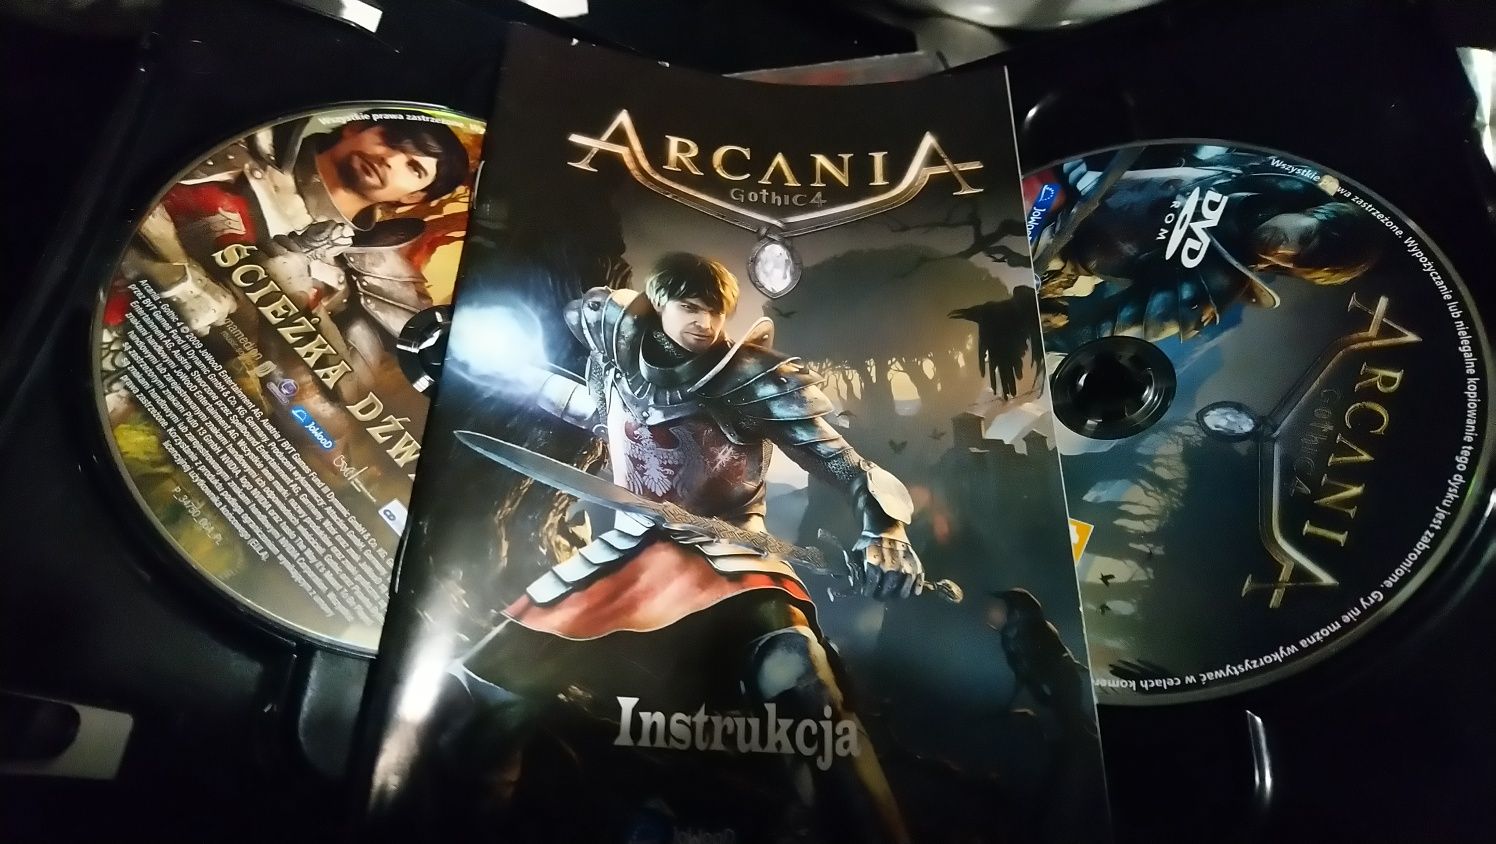 Gothic 4-Arcania gra komputerowa pc polska wersja